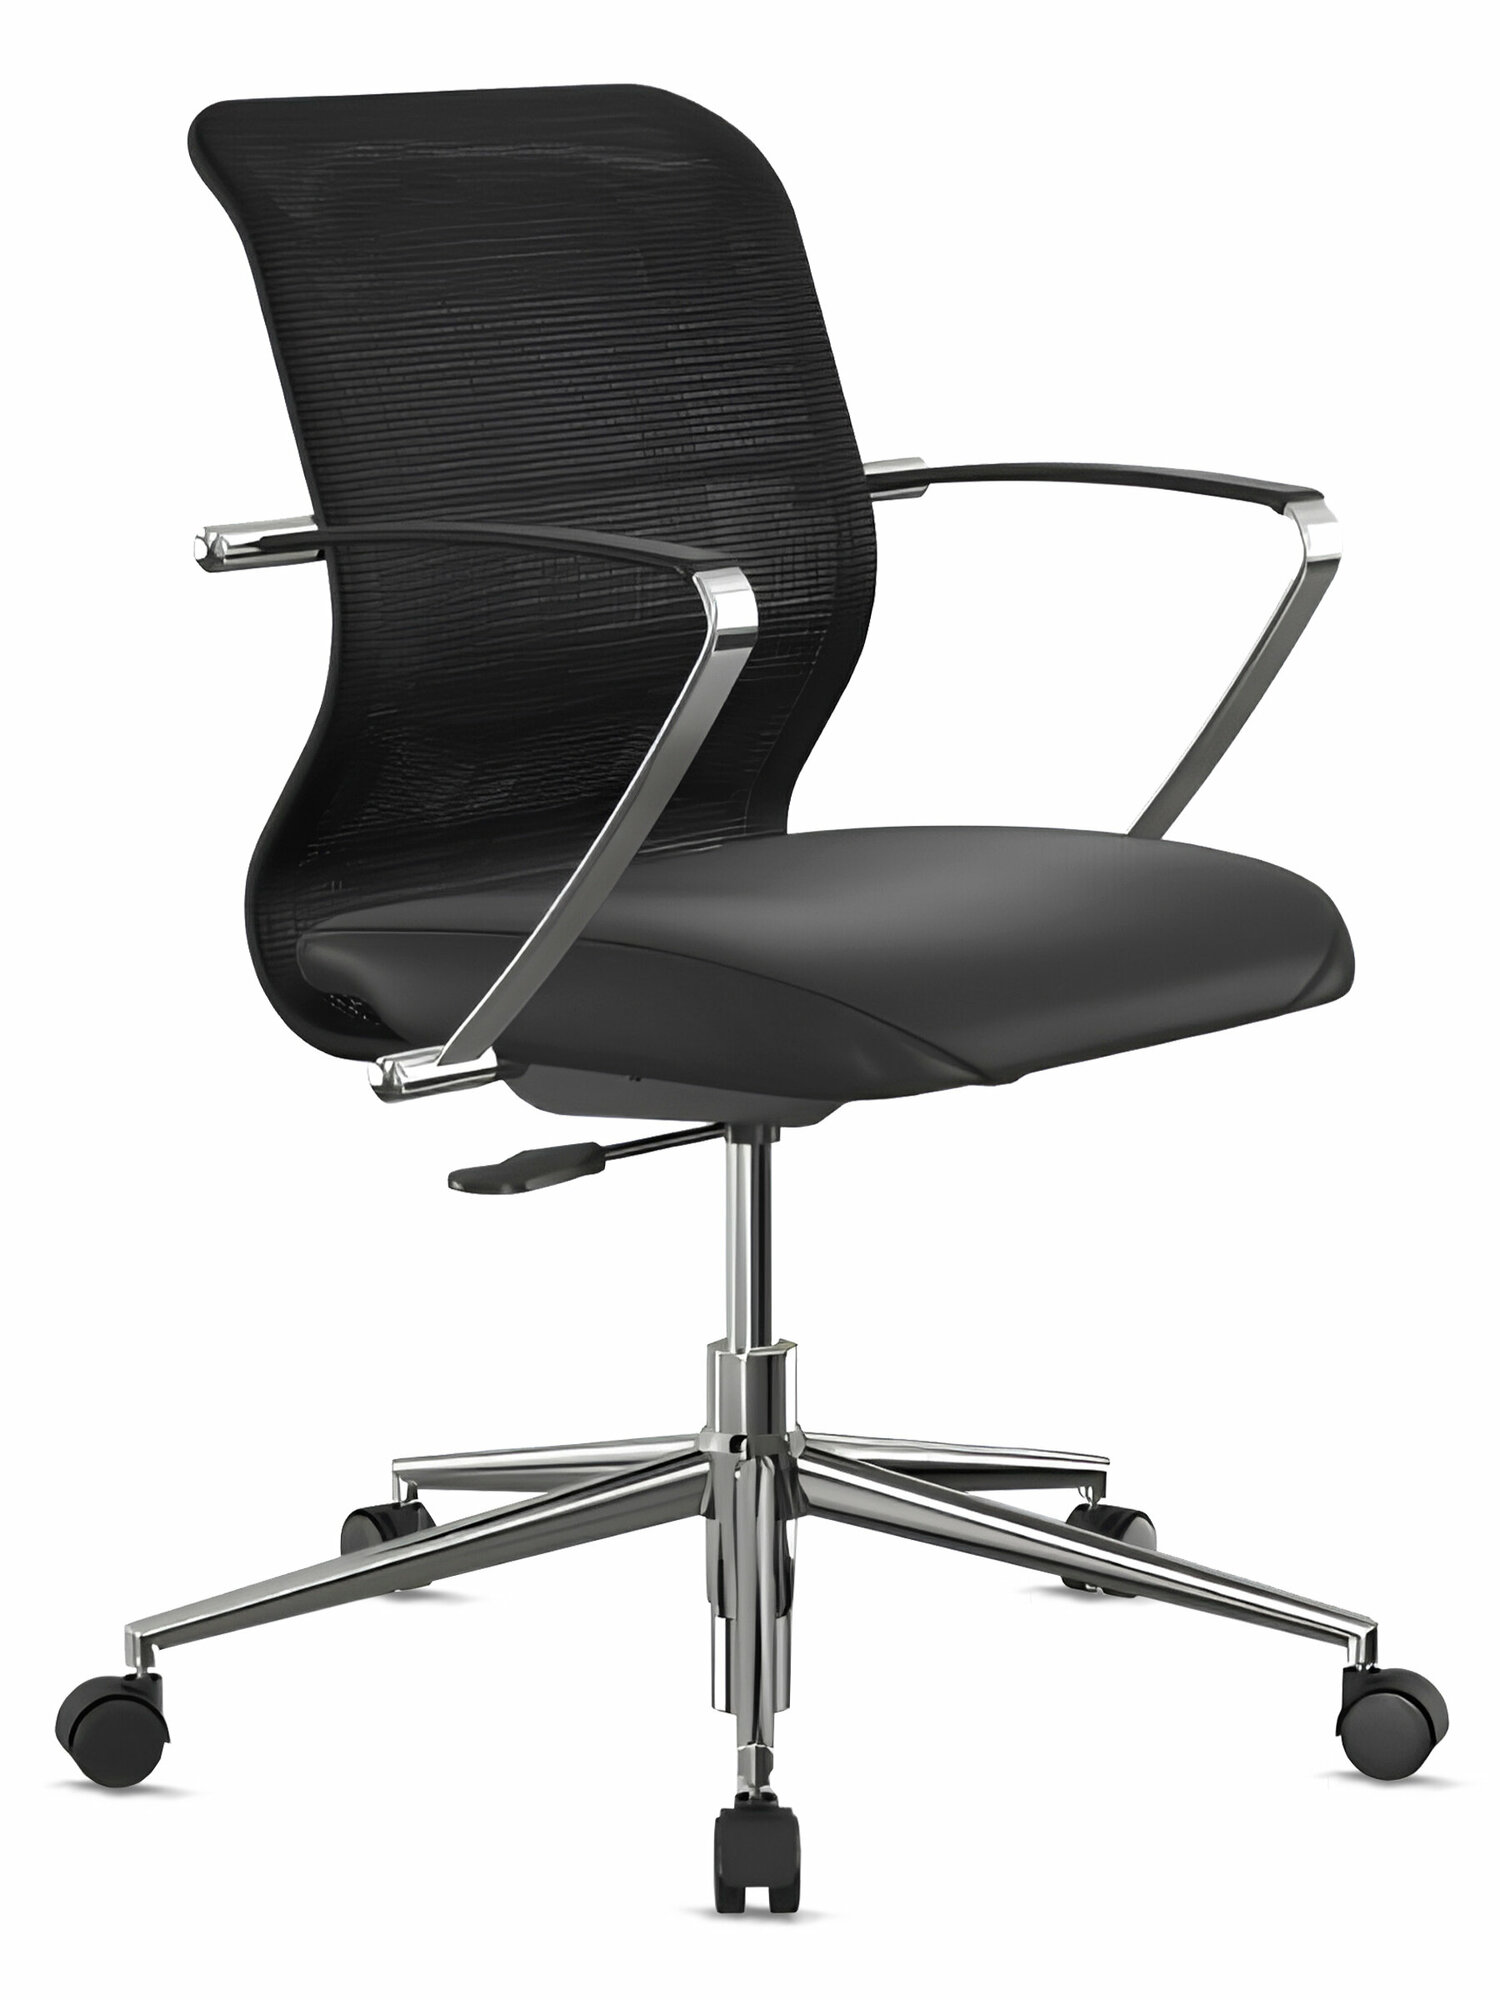 Кресло офисное METTA ErgoLife Sit 8 M4-9K - X2+Extra, черный / Компьютерное кресло для начальника, менеджера, для дома